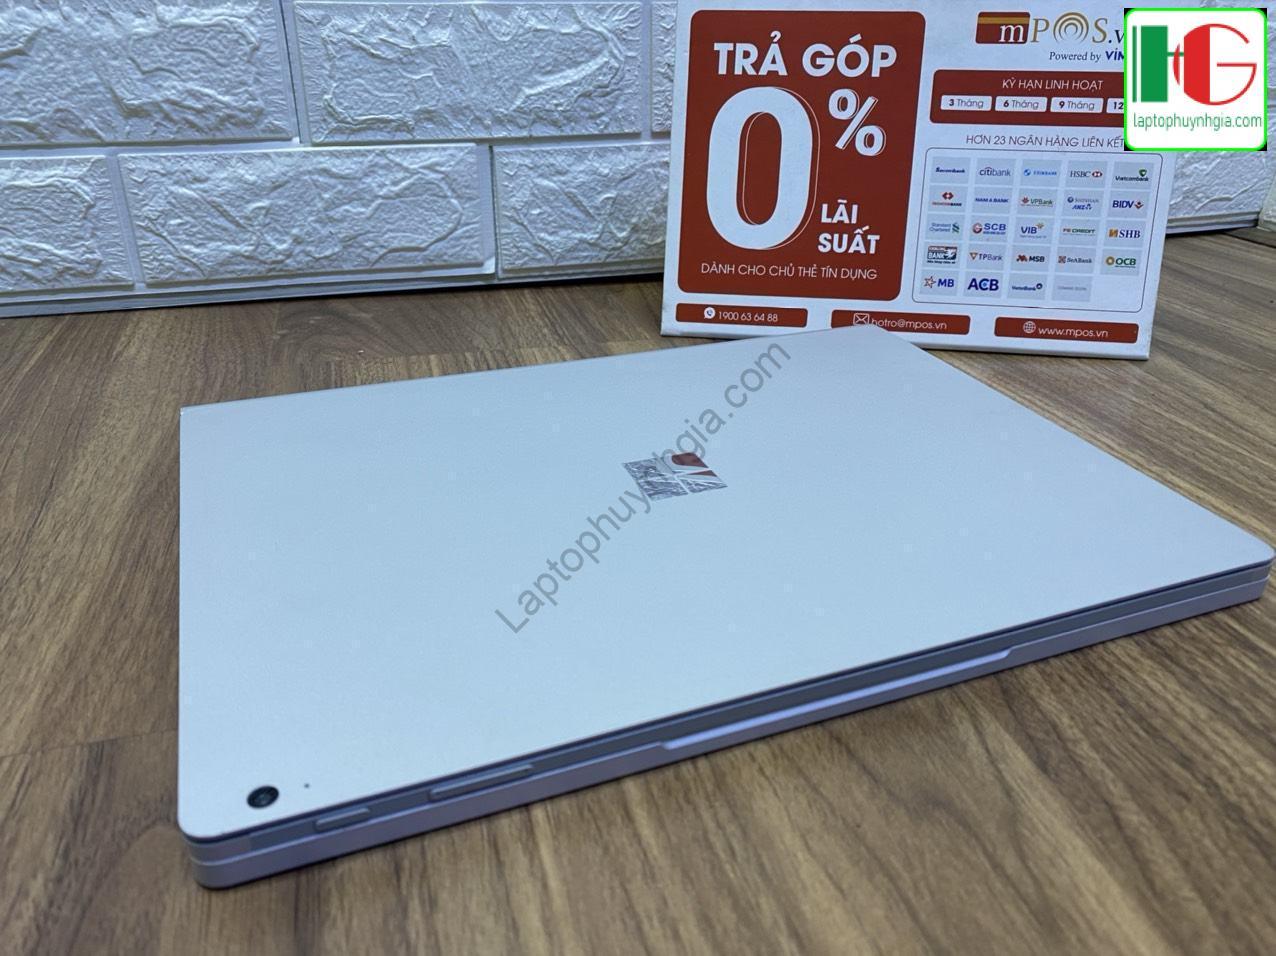 Laptop suface book 3 i7 1065G7 Ram 32G SSD 512G Nvidia GTX1650 MaxQ LCD 3k laptophuynhgia 1 - Laptop Cũ Bình Dương Huỳnh Gia